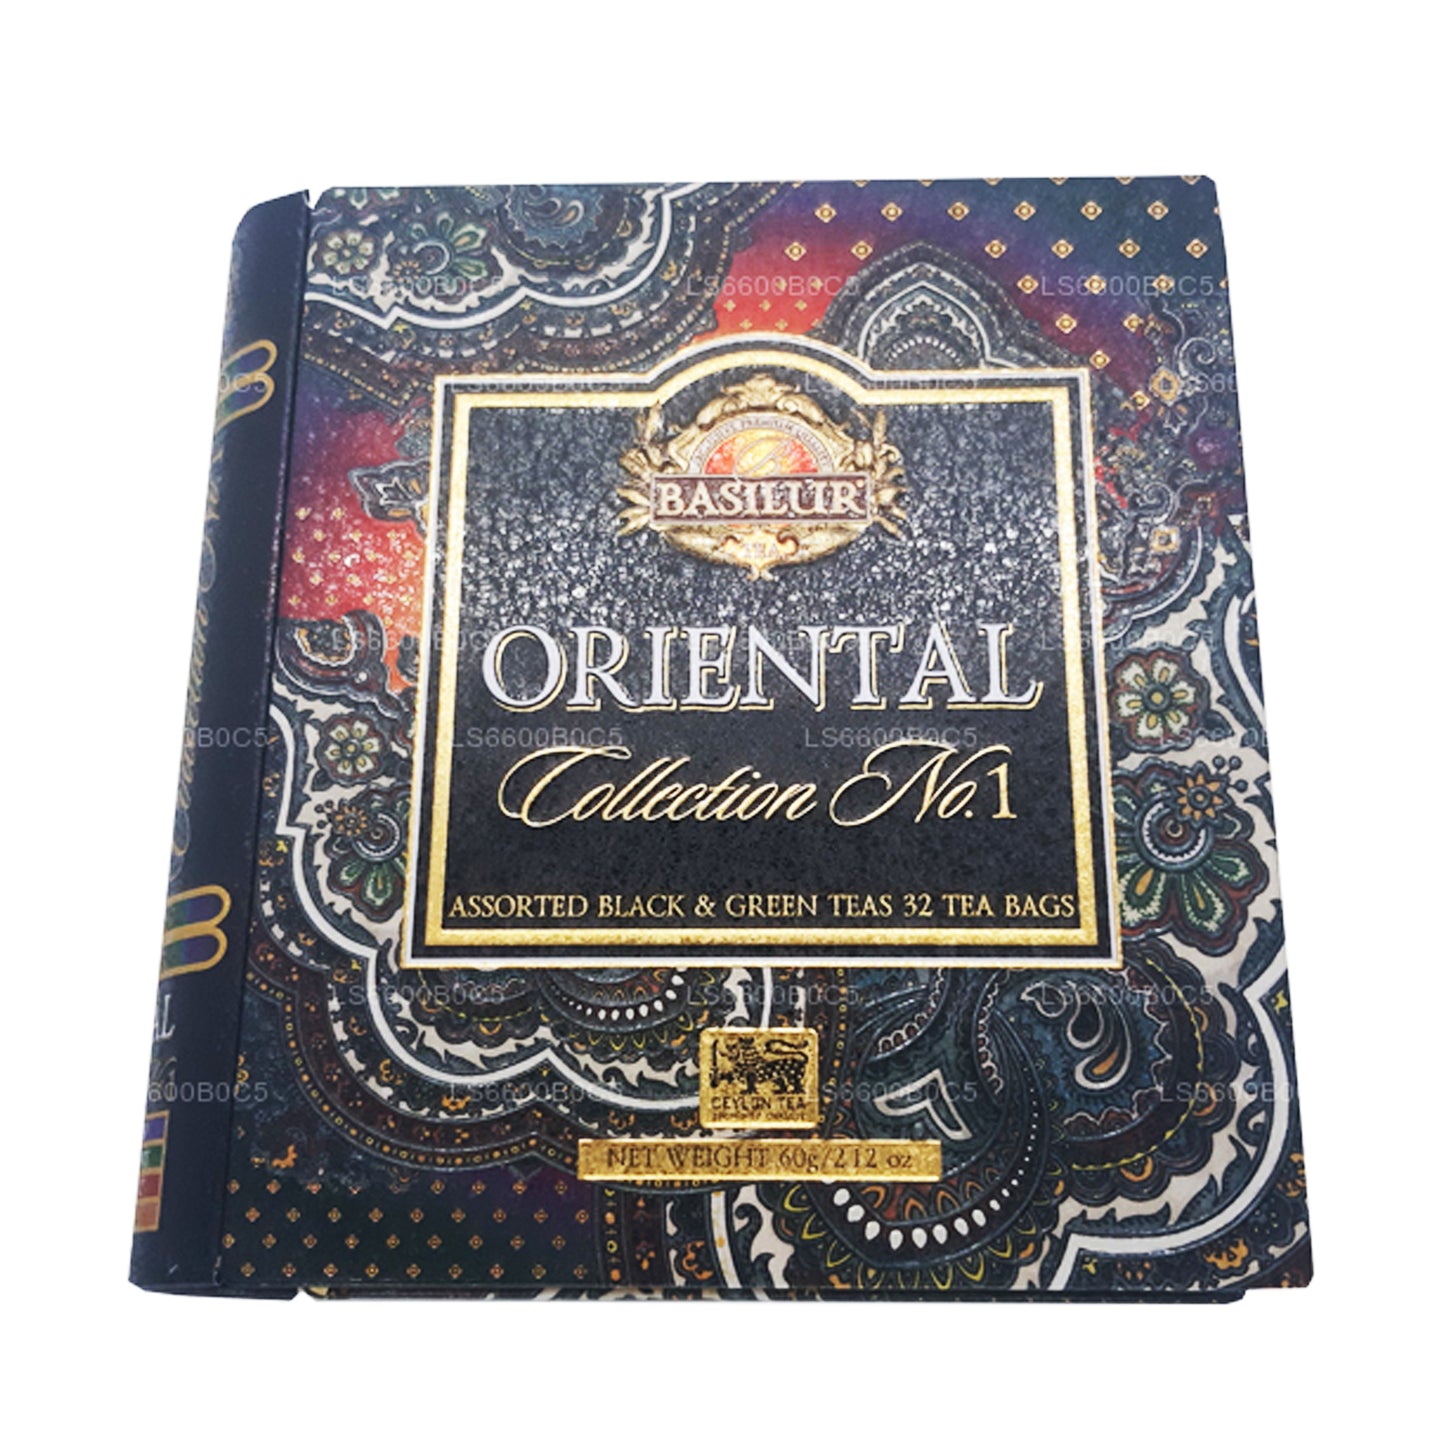 Libro de té Basilur Oriental Collection, volumen 1 (60 g), 32 bolsitas de té